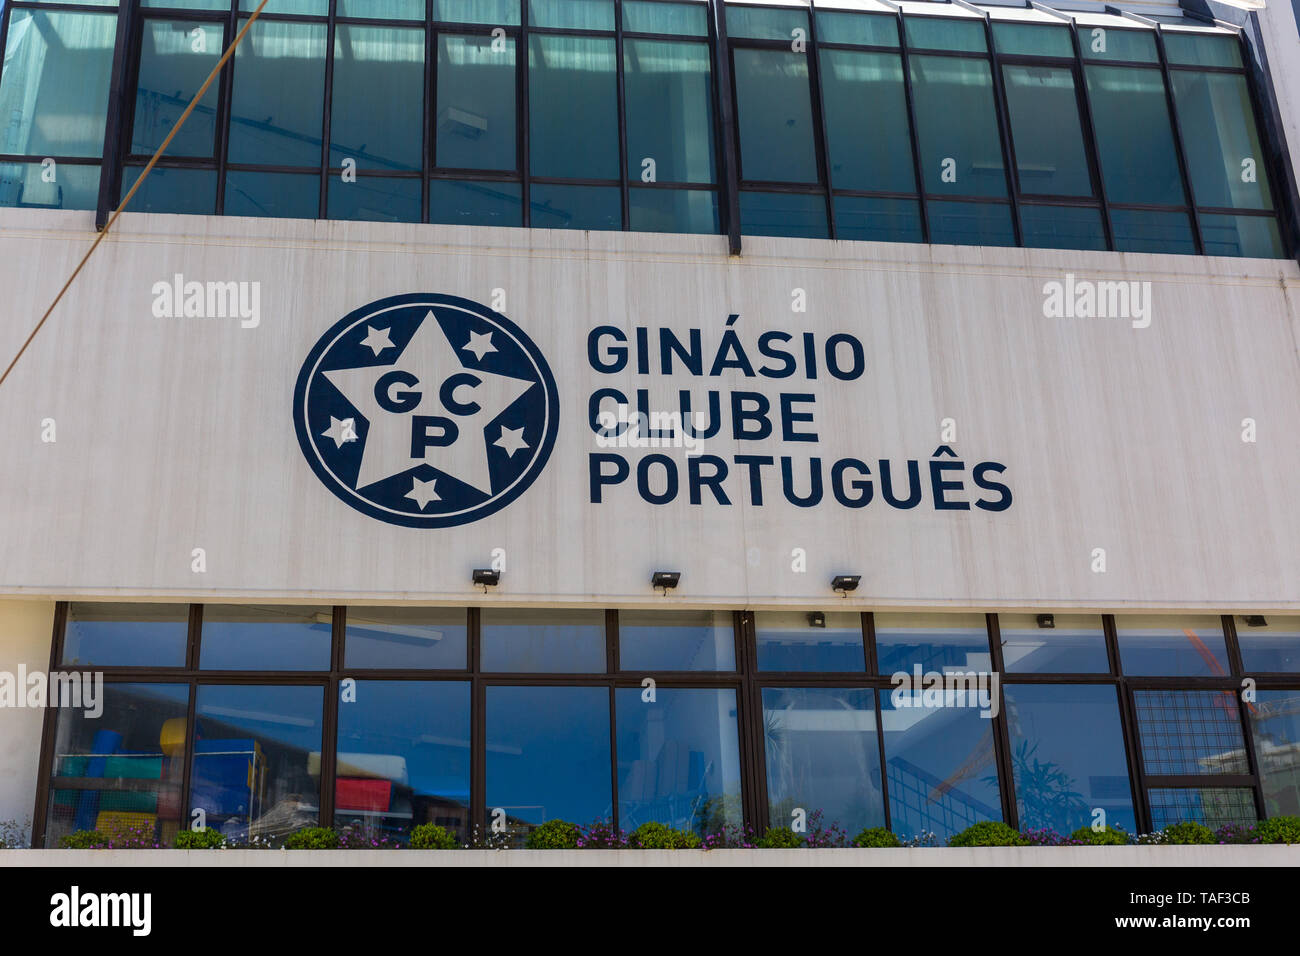 Ginasio, Clube, Portuguese Stock Photo